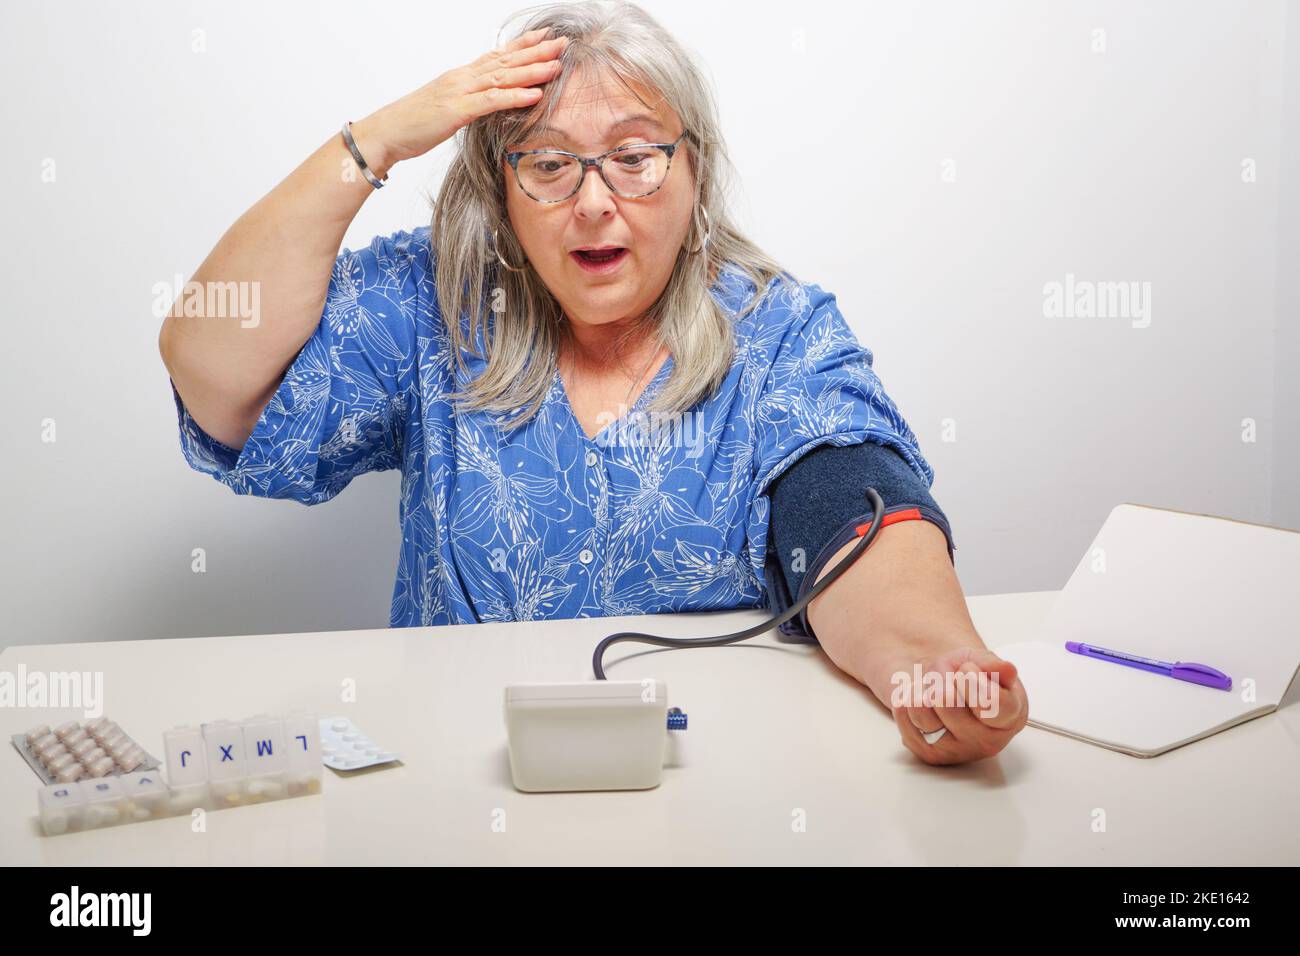 femme avec une expression surprise tout en prenant un test de tension artérielle Banque D'Images